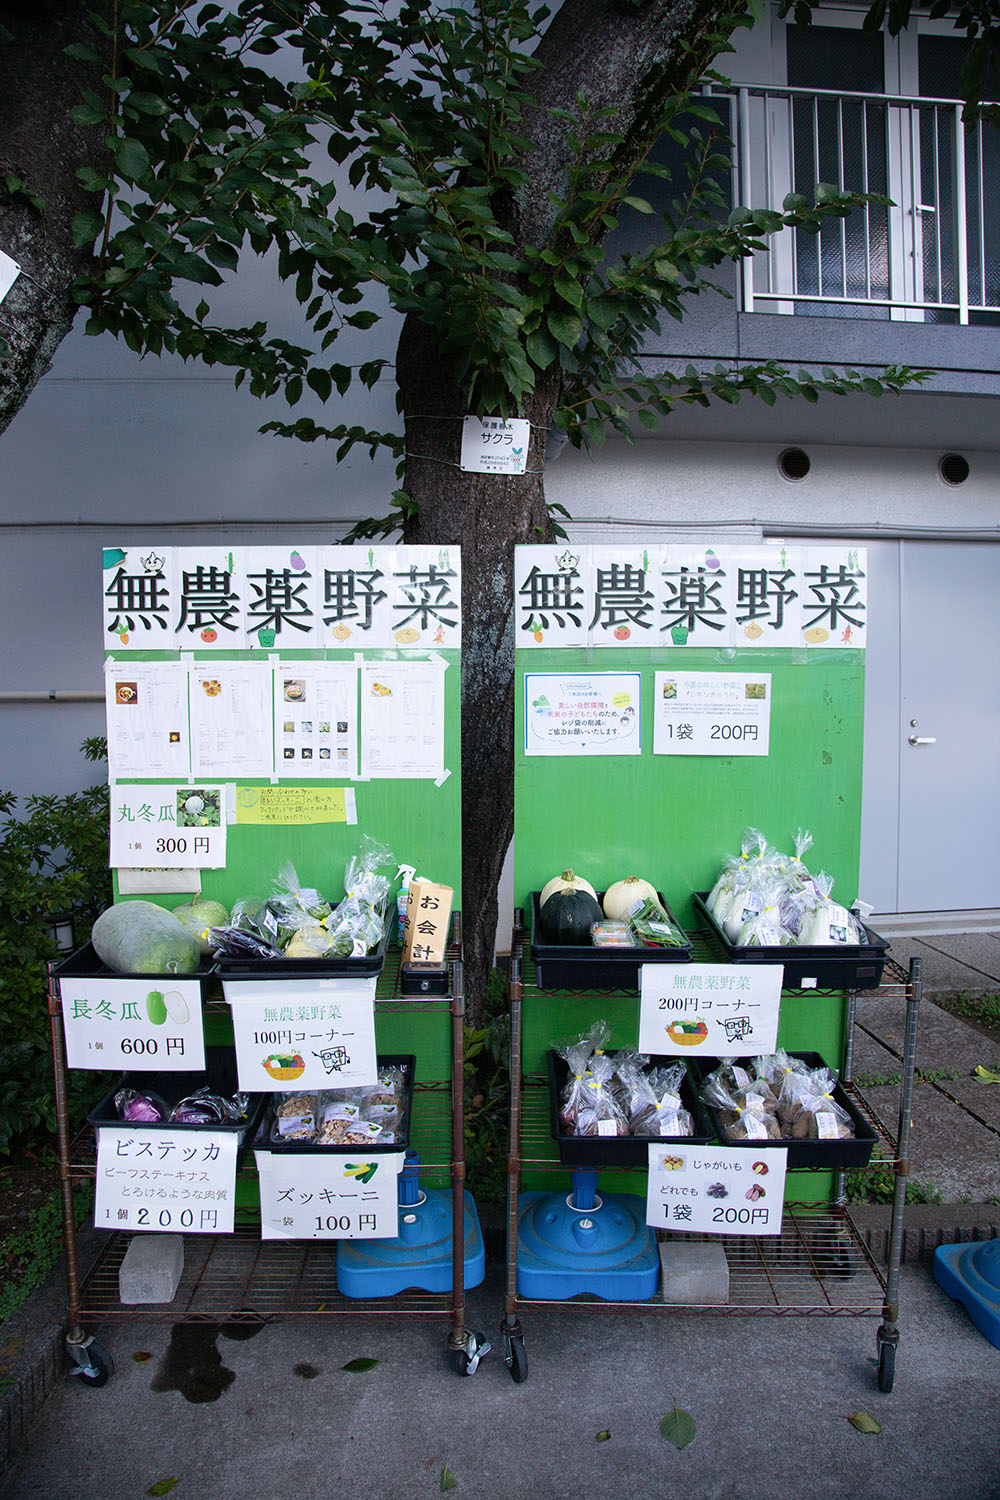 旭出学園の門前で生徒が育てた野菜を販売中。